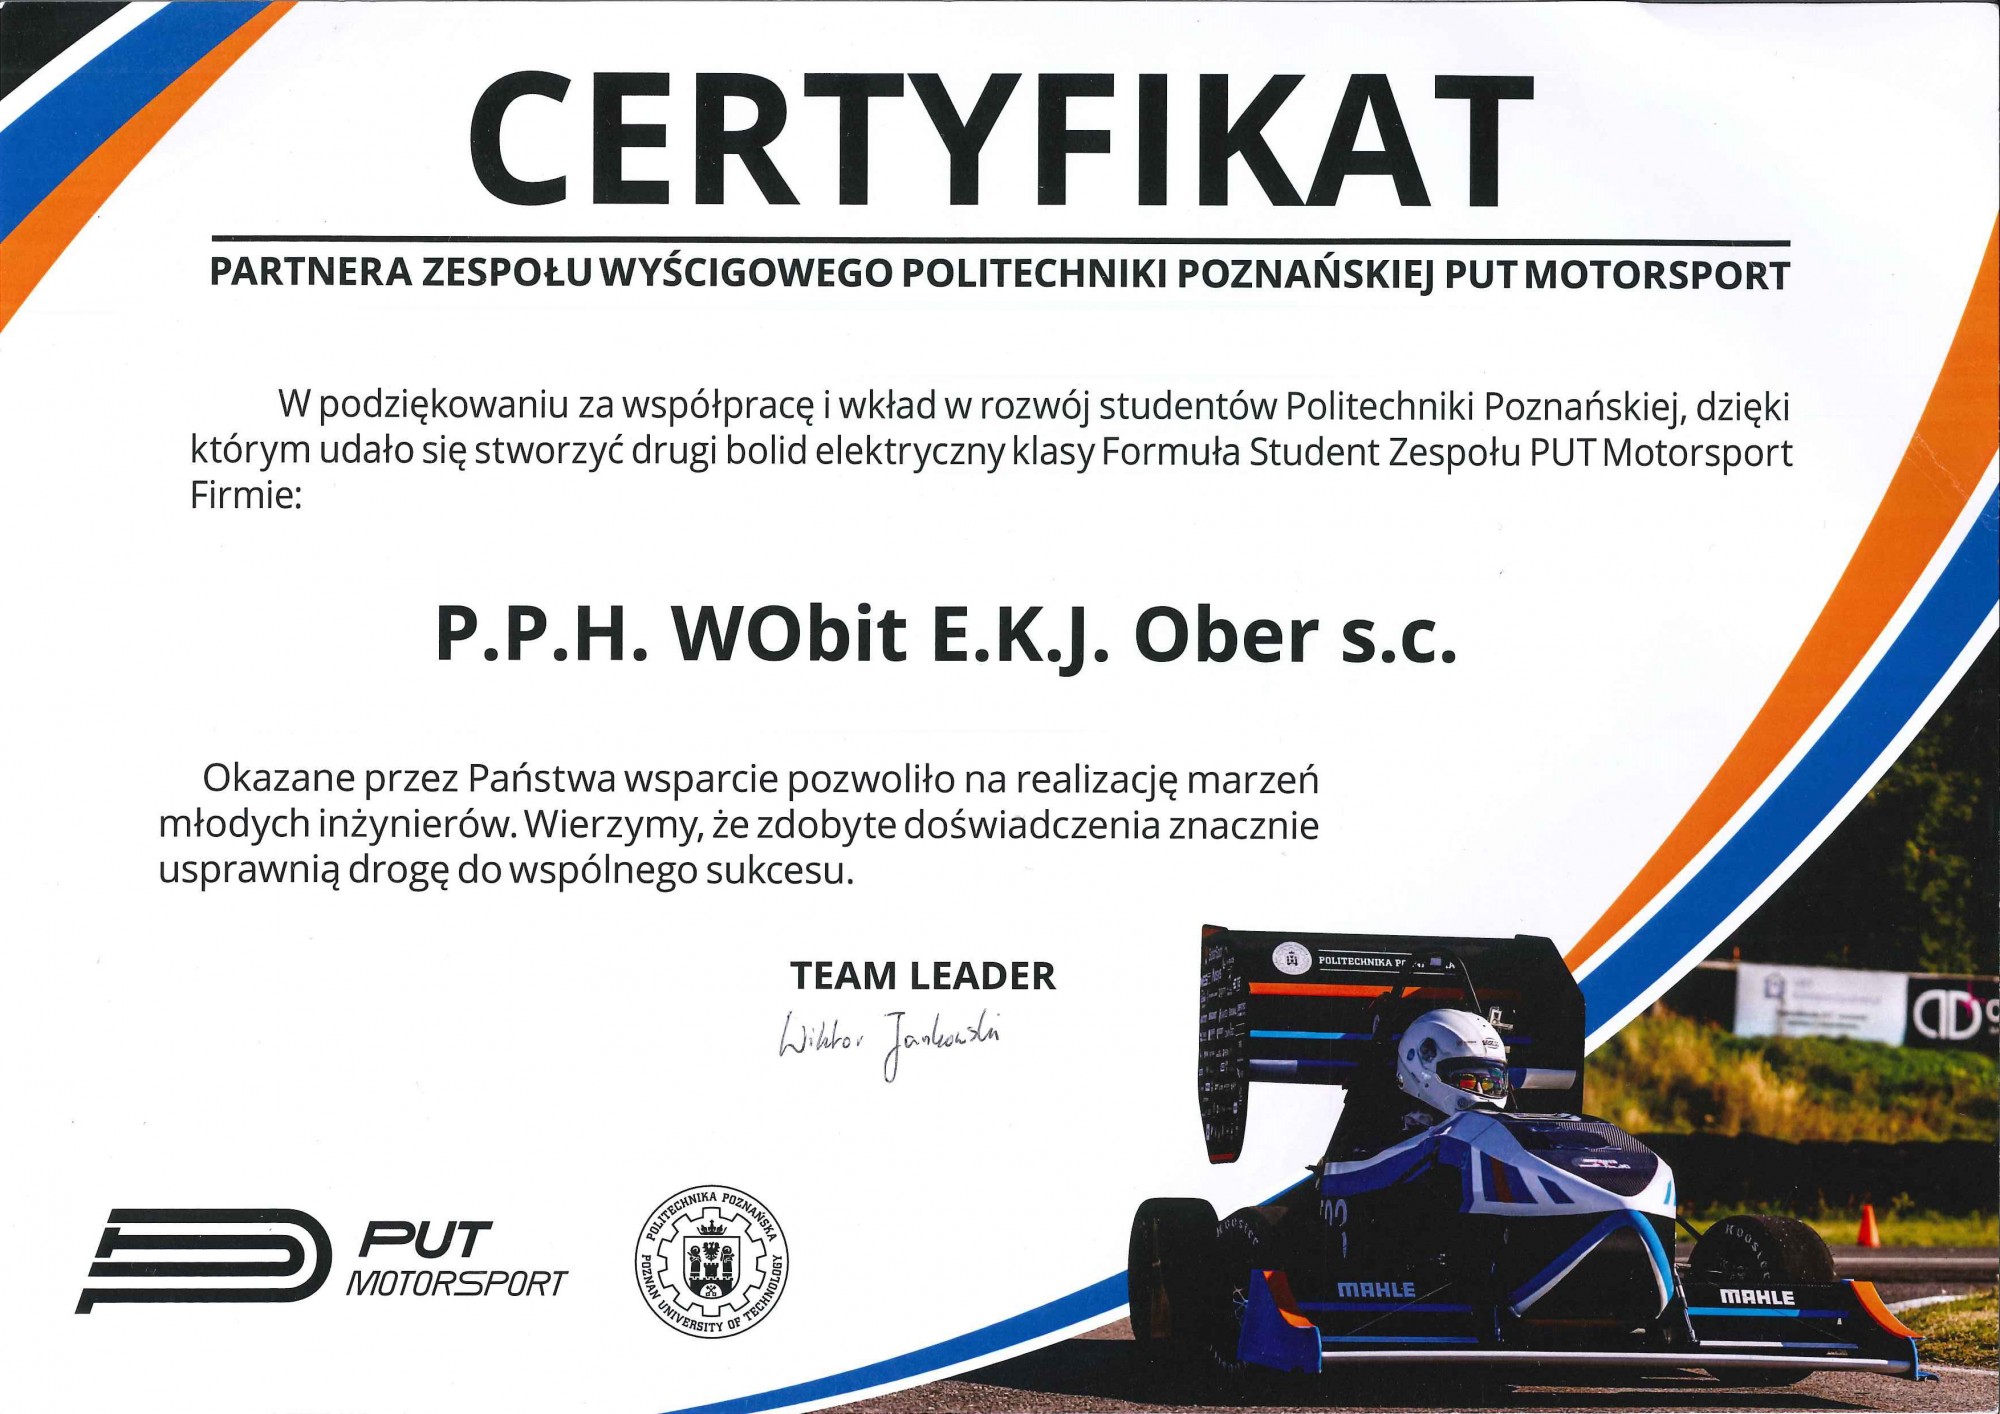 Certyfikat Partnera Zespołu Wyścigowego Politechniki Poznańskiej PUT Motorsport